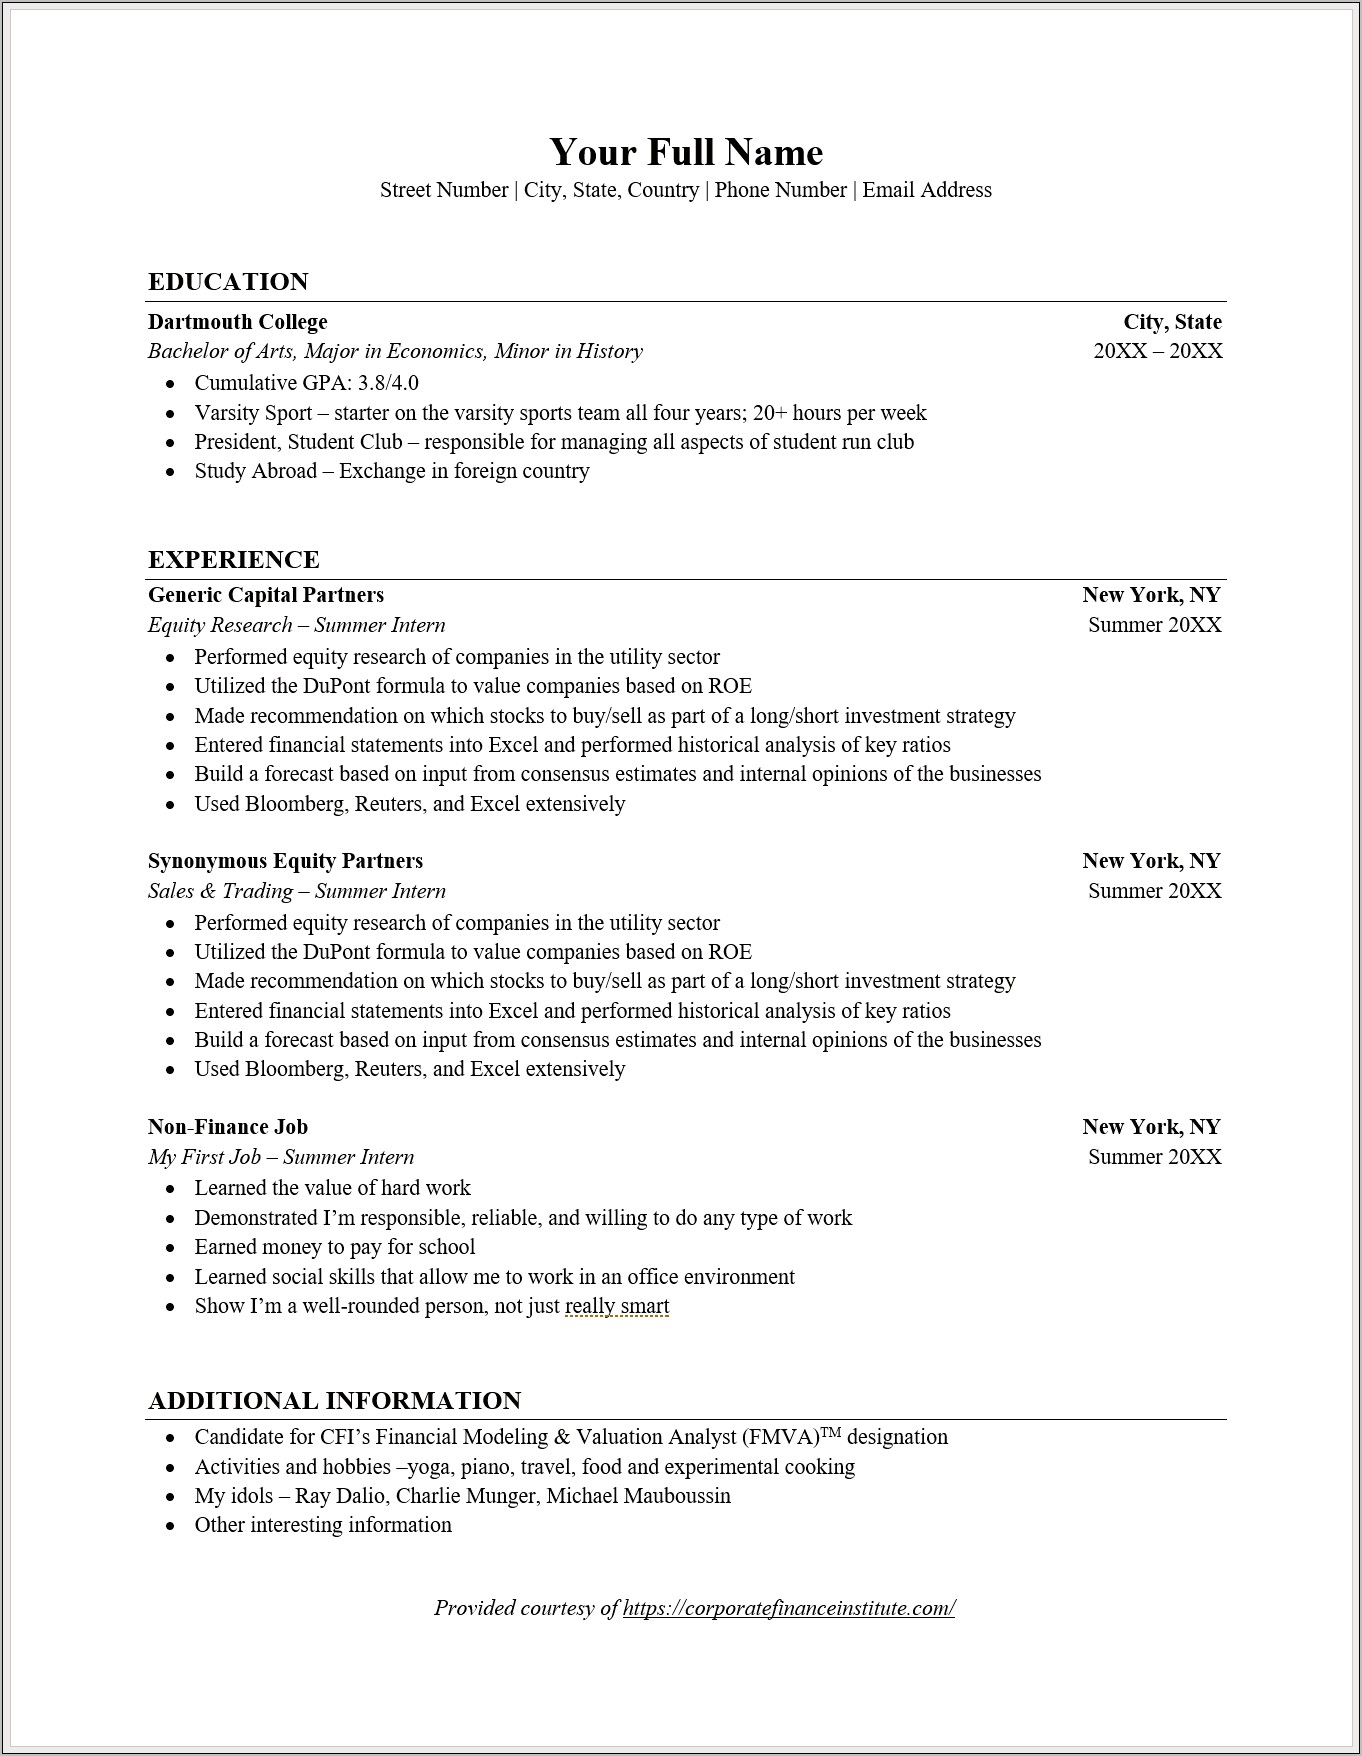 Listing Incomplete Skills On Resume